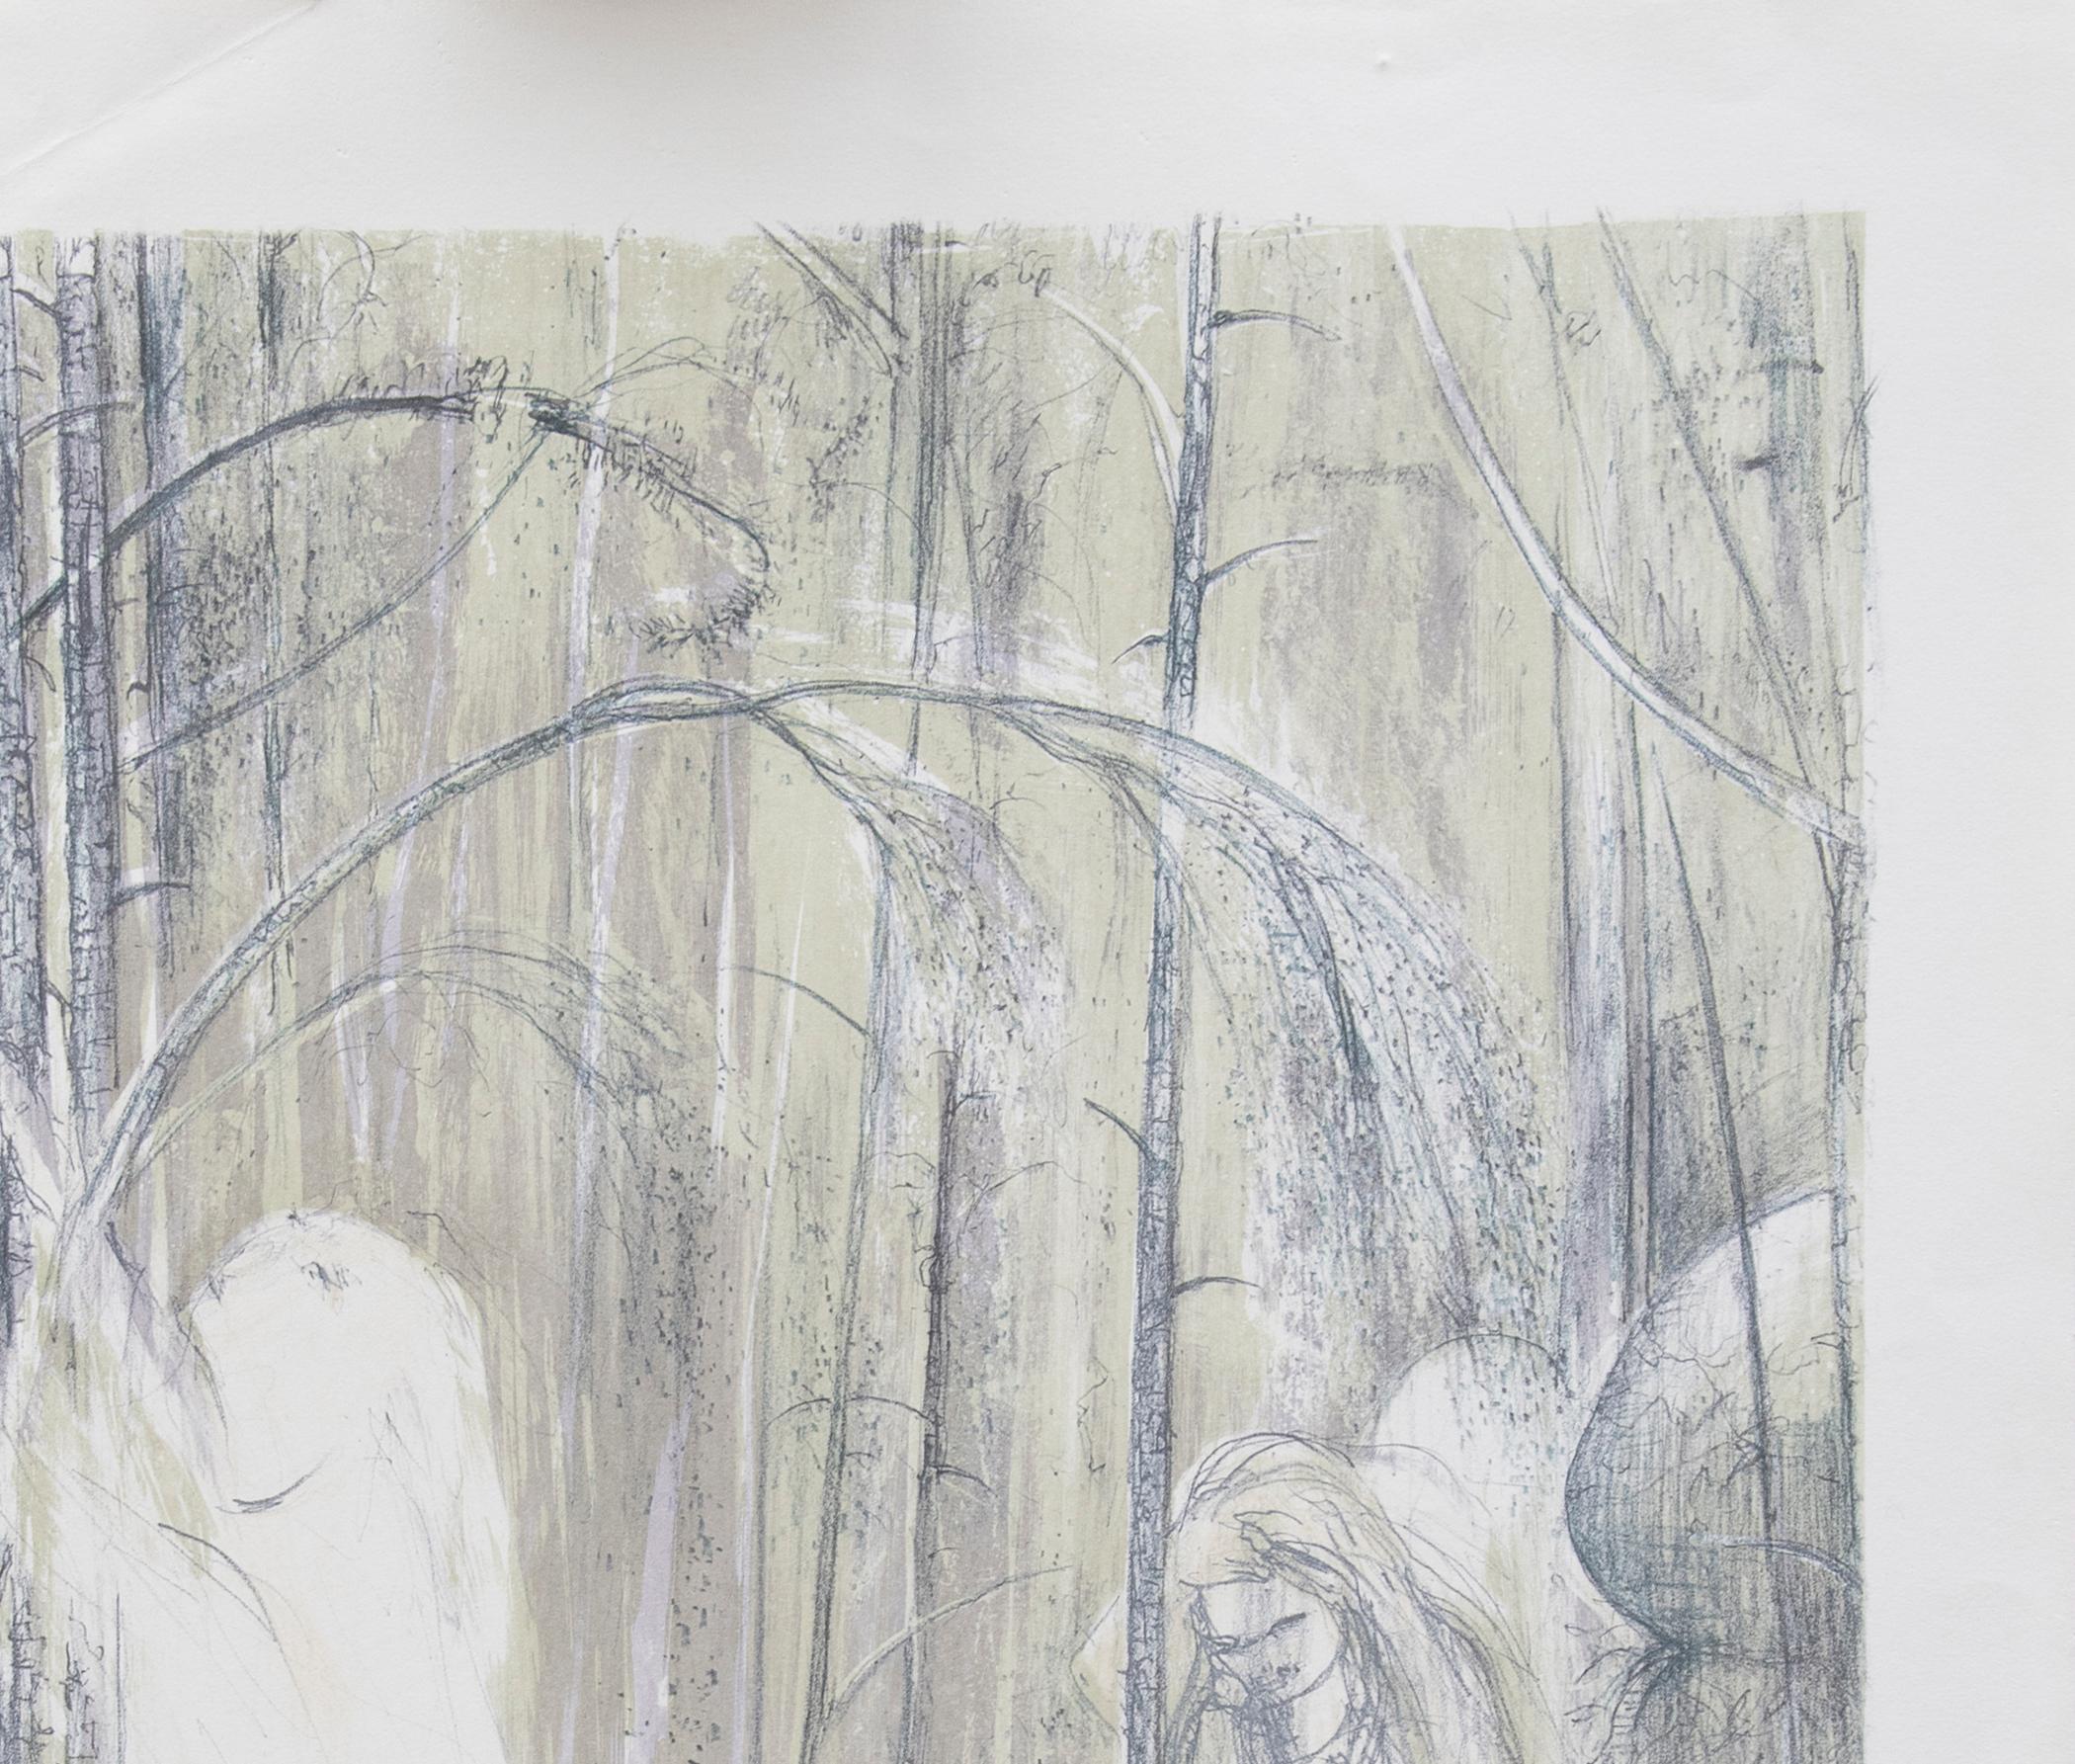 Saint François dans les bois

Par Arthur Boyd
Support - Lithographie
Signé - Oui
Édition - Épreuve d'artiste
Taille - 740mm x 500mm
Date - 1979
Condition - 9
La couleur de l'impression peut ne pas être exacte lorsqu'elle est visualisée sur un